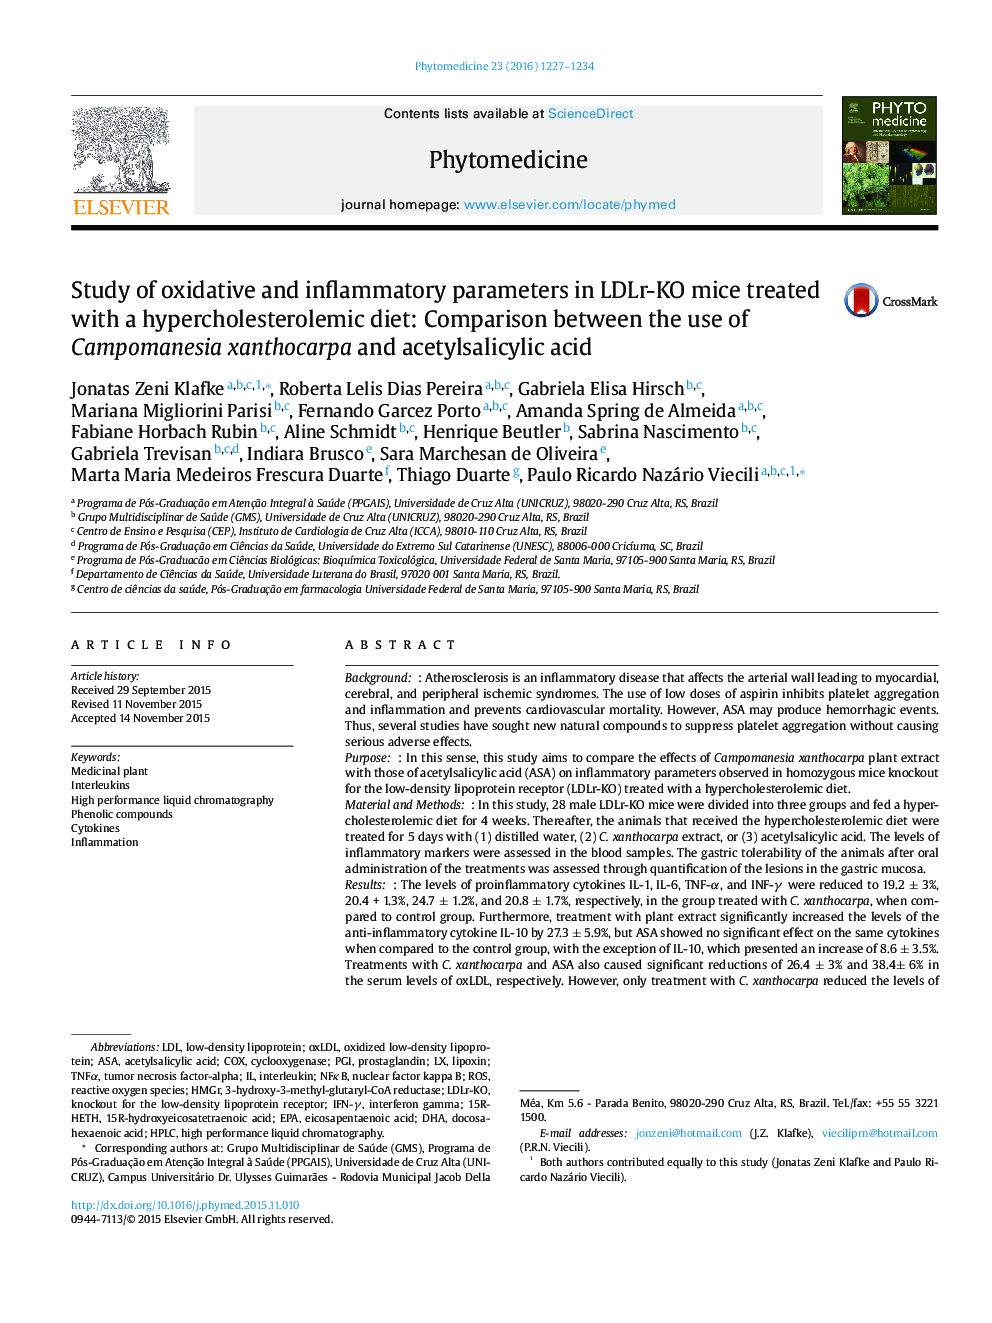 بررسی پارامترهای اکسیداتیو و التهاب در موش LDLR-KO تحت درمان با رژیم پرکلسترول: مقایسه بین استفاده از xanthocarpa Campomanesia و اسید استیل